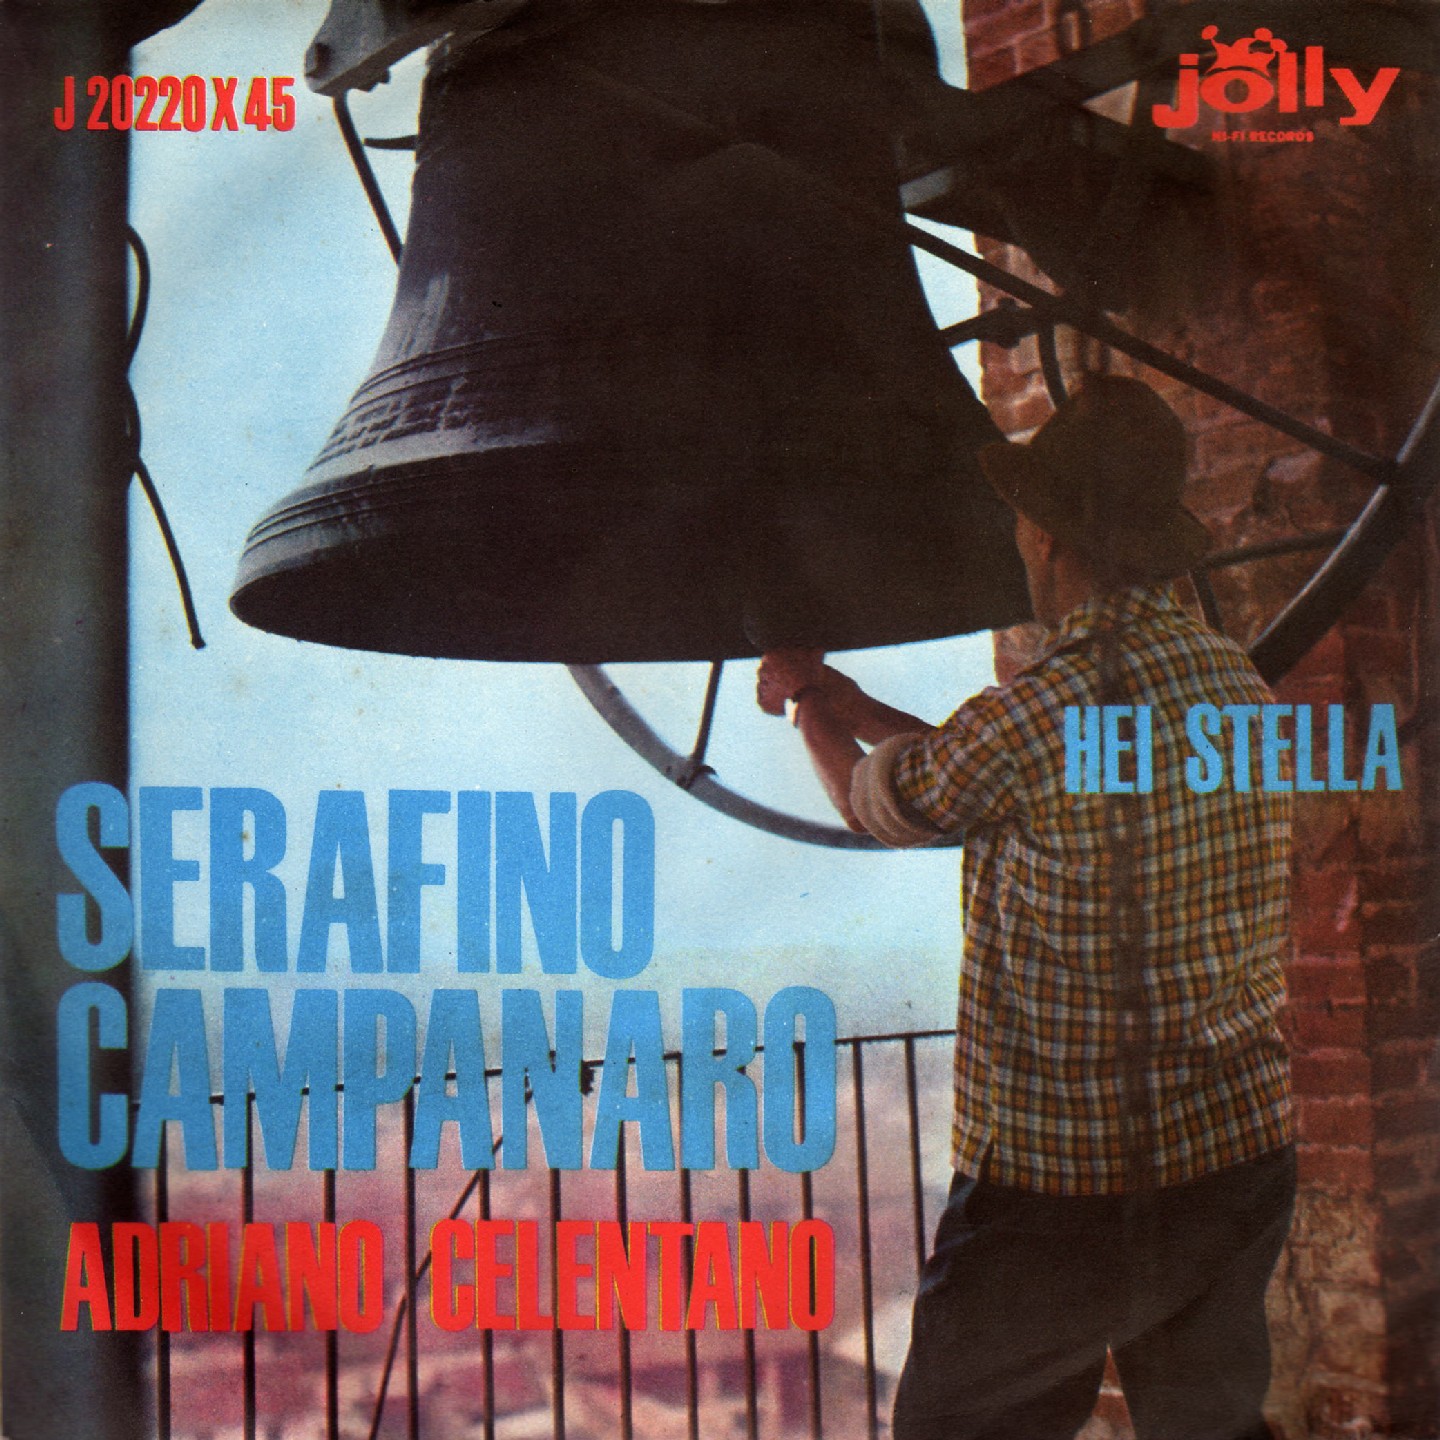 Serafino campanaro / Hei stella 